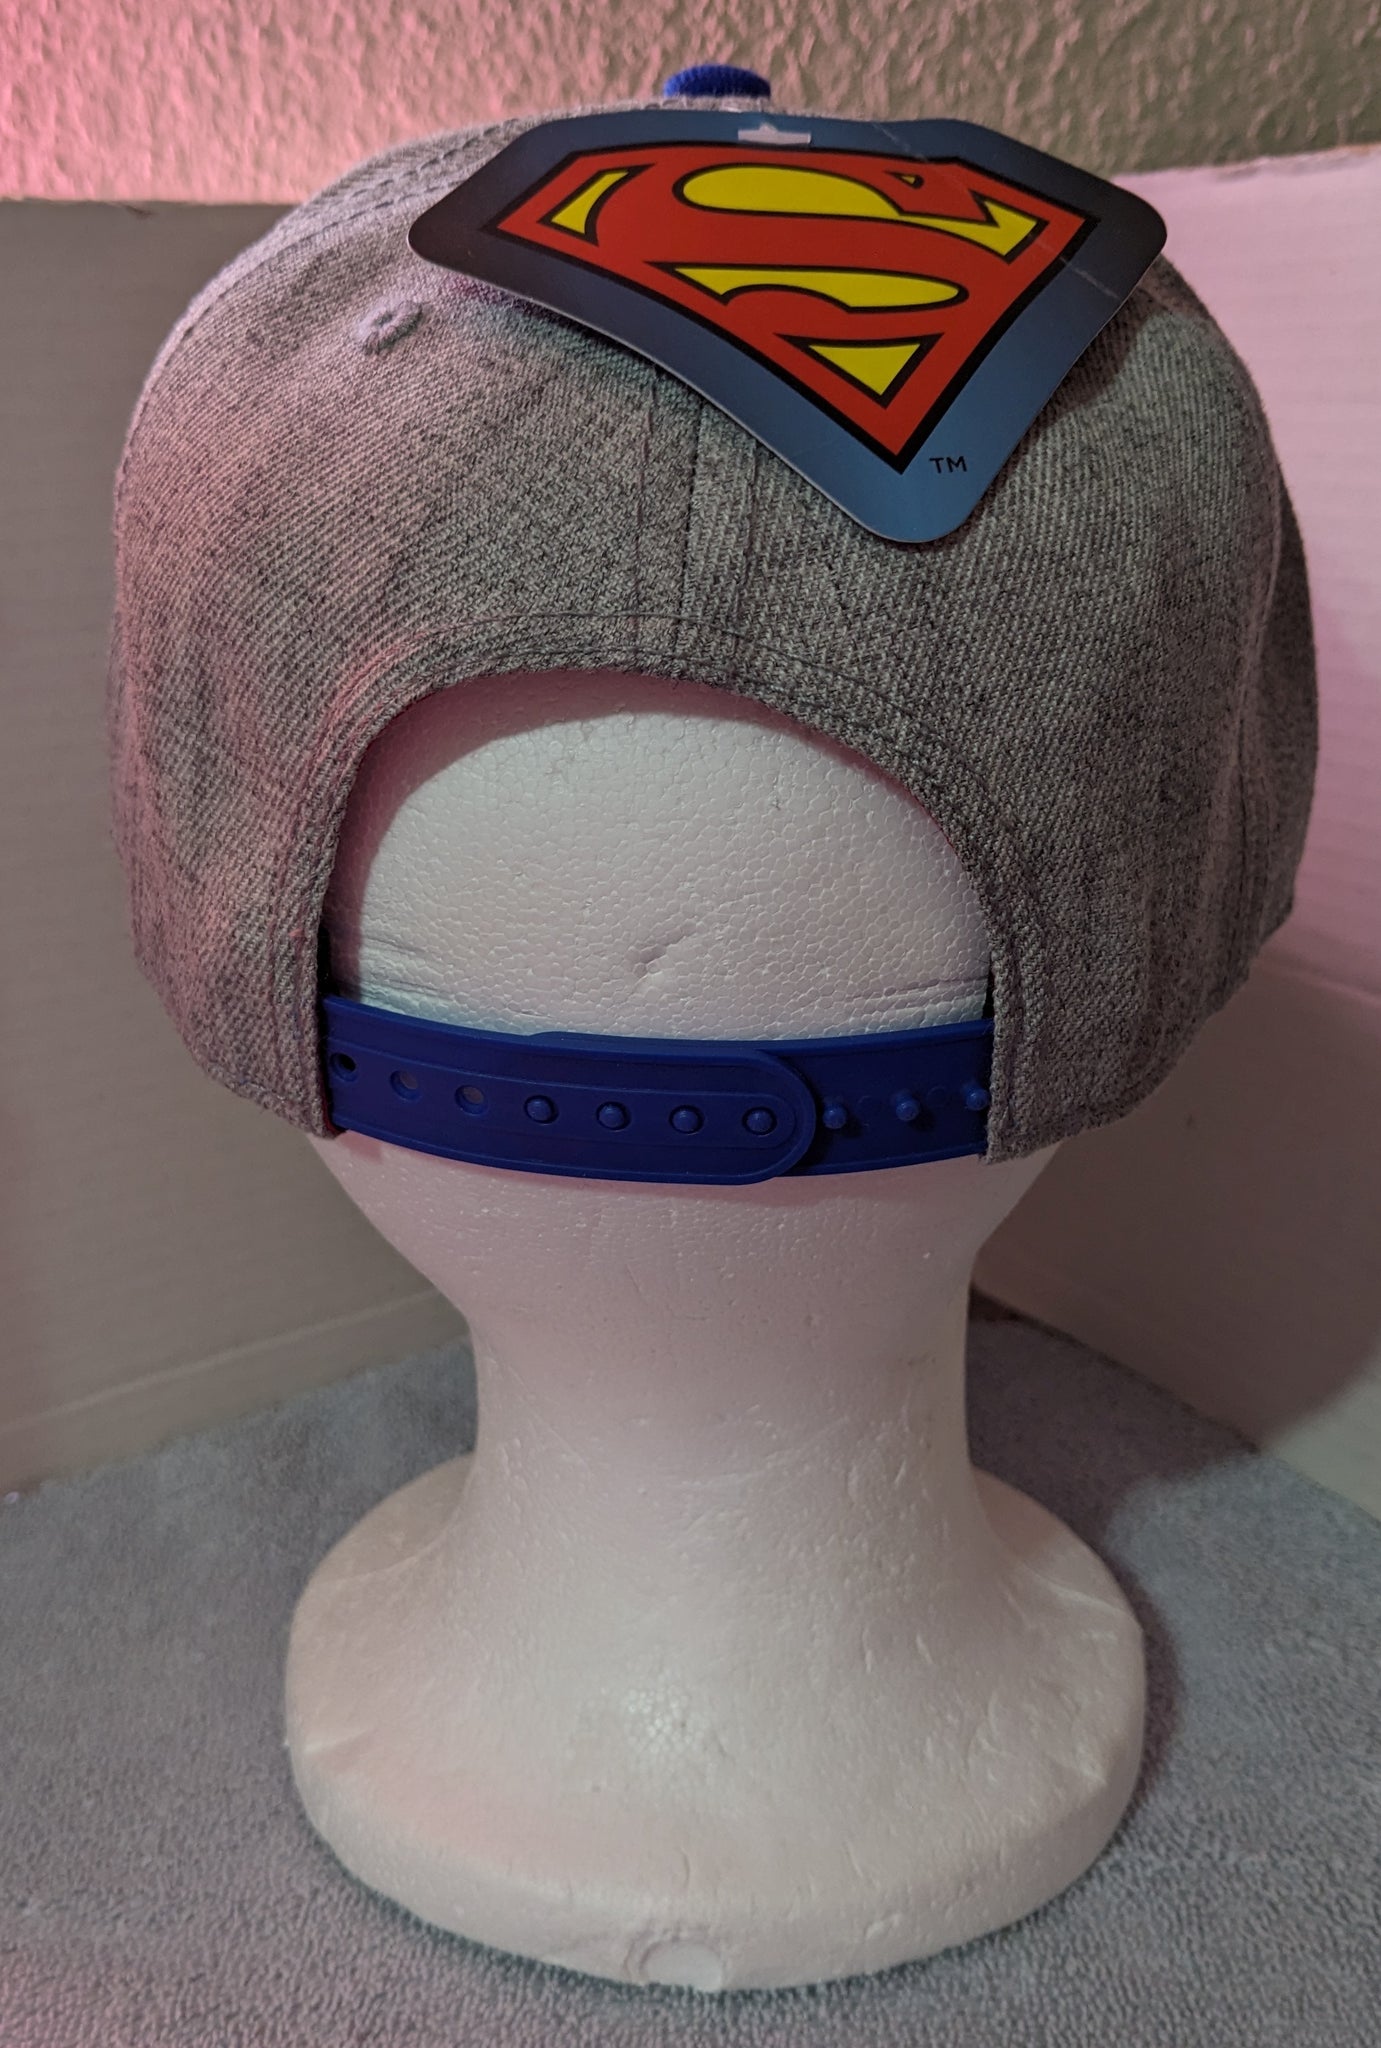 DC Comics Superman Snapback Hat Official Superhero Cap